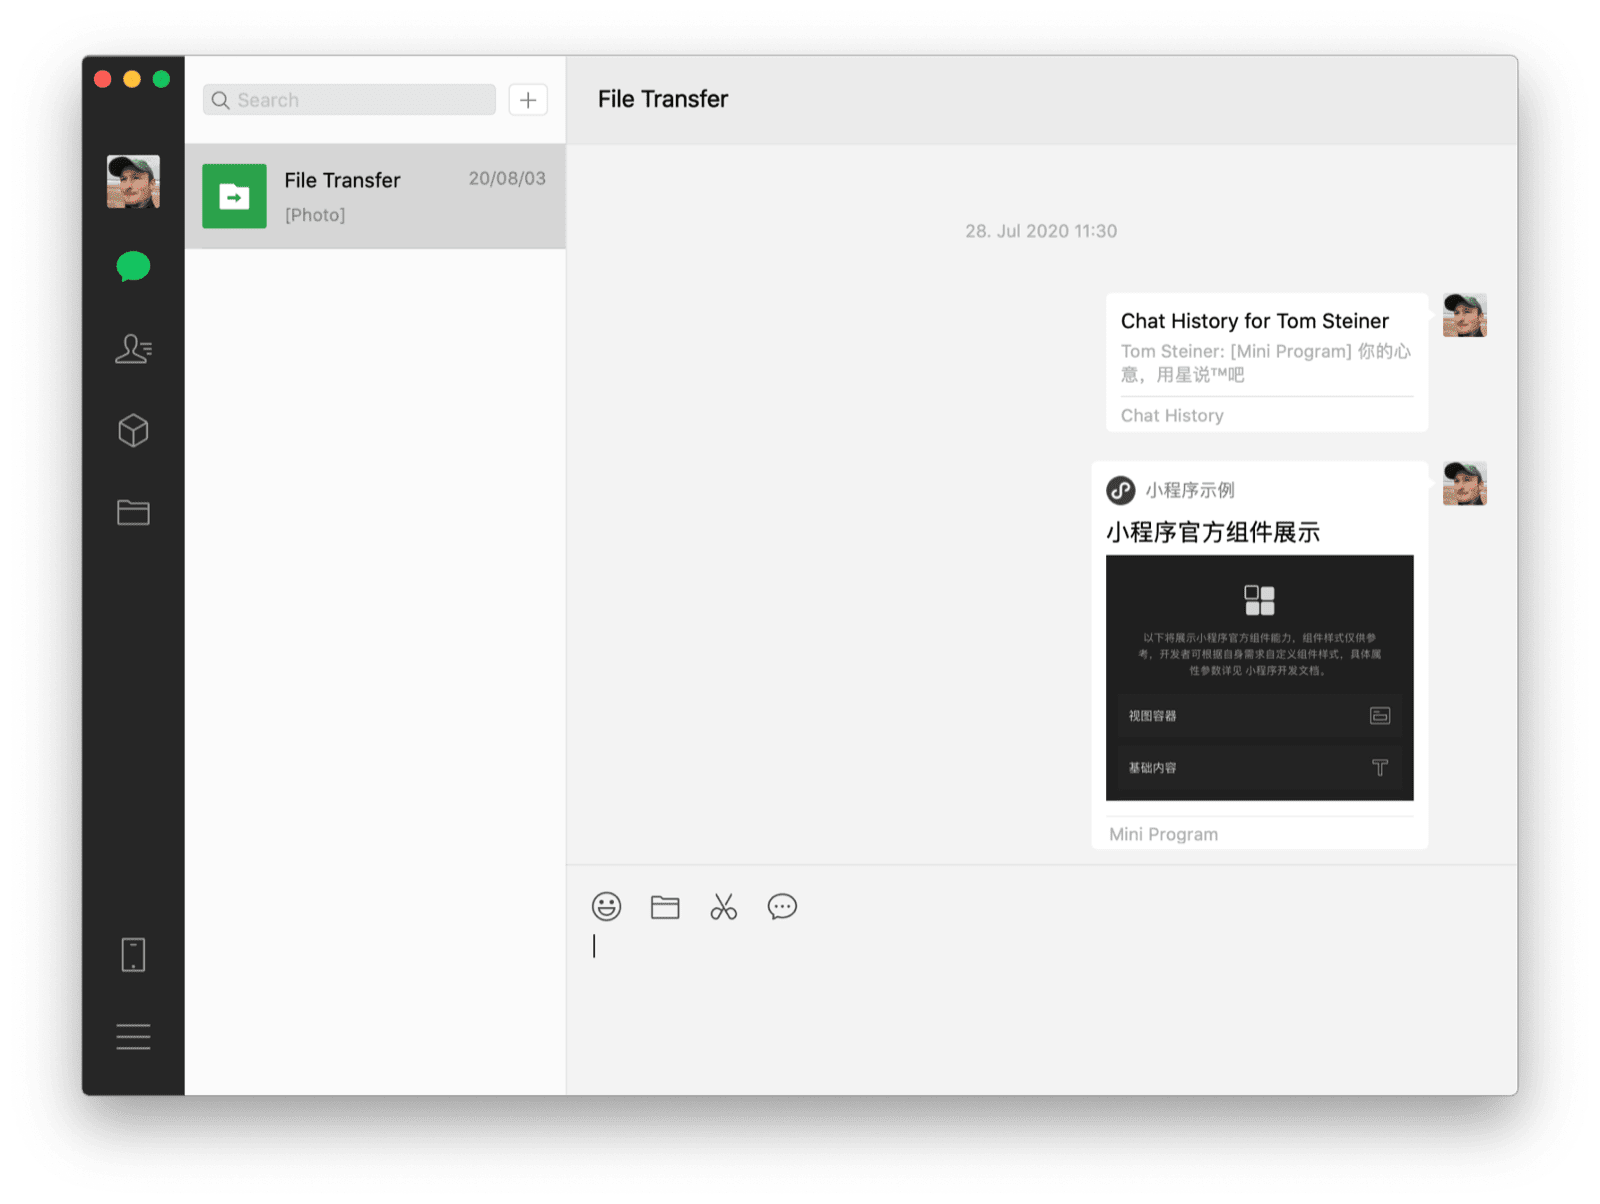 自分とのチャットを表示している WeChat macOS デスクトップ クライアント。共有ミニアプリとチャット履歴が 2 つのメッセージとして表示されている。